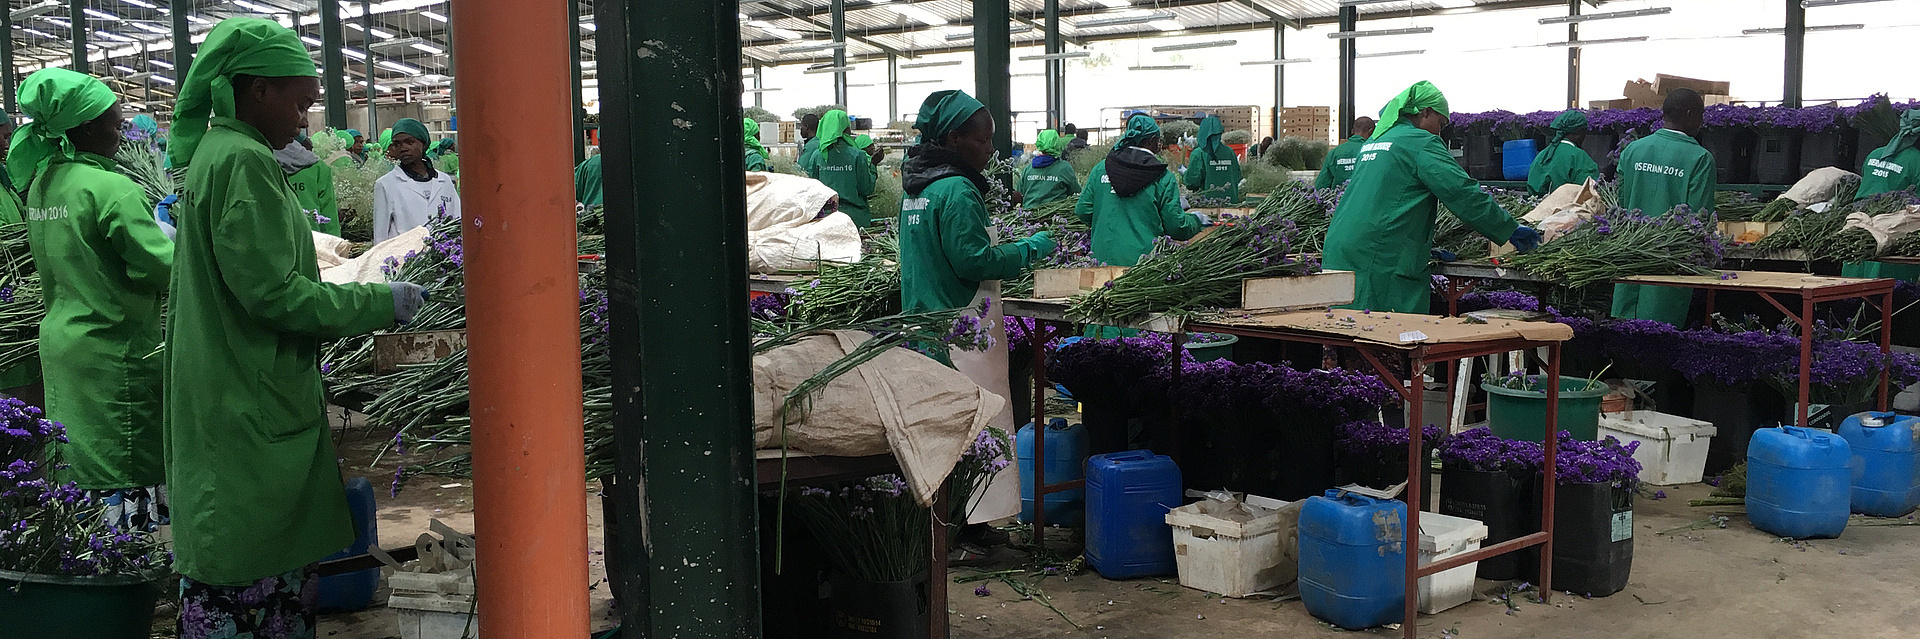 Arbeiter auf einer Blumenfarm in Kenia